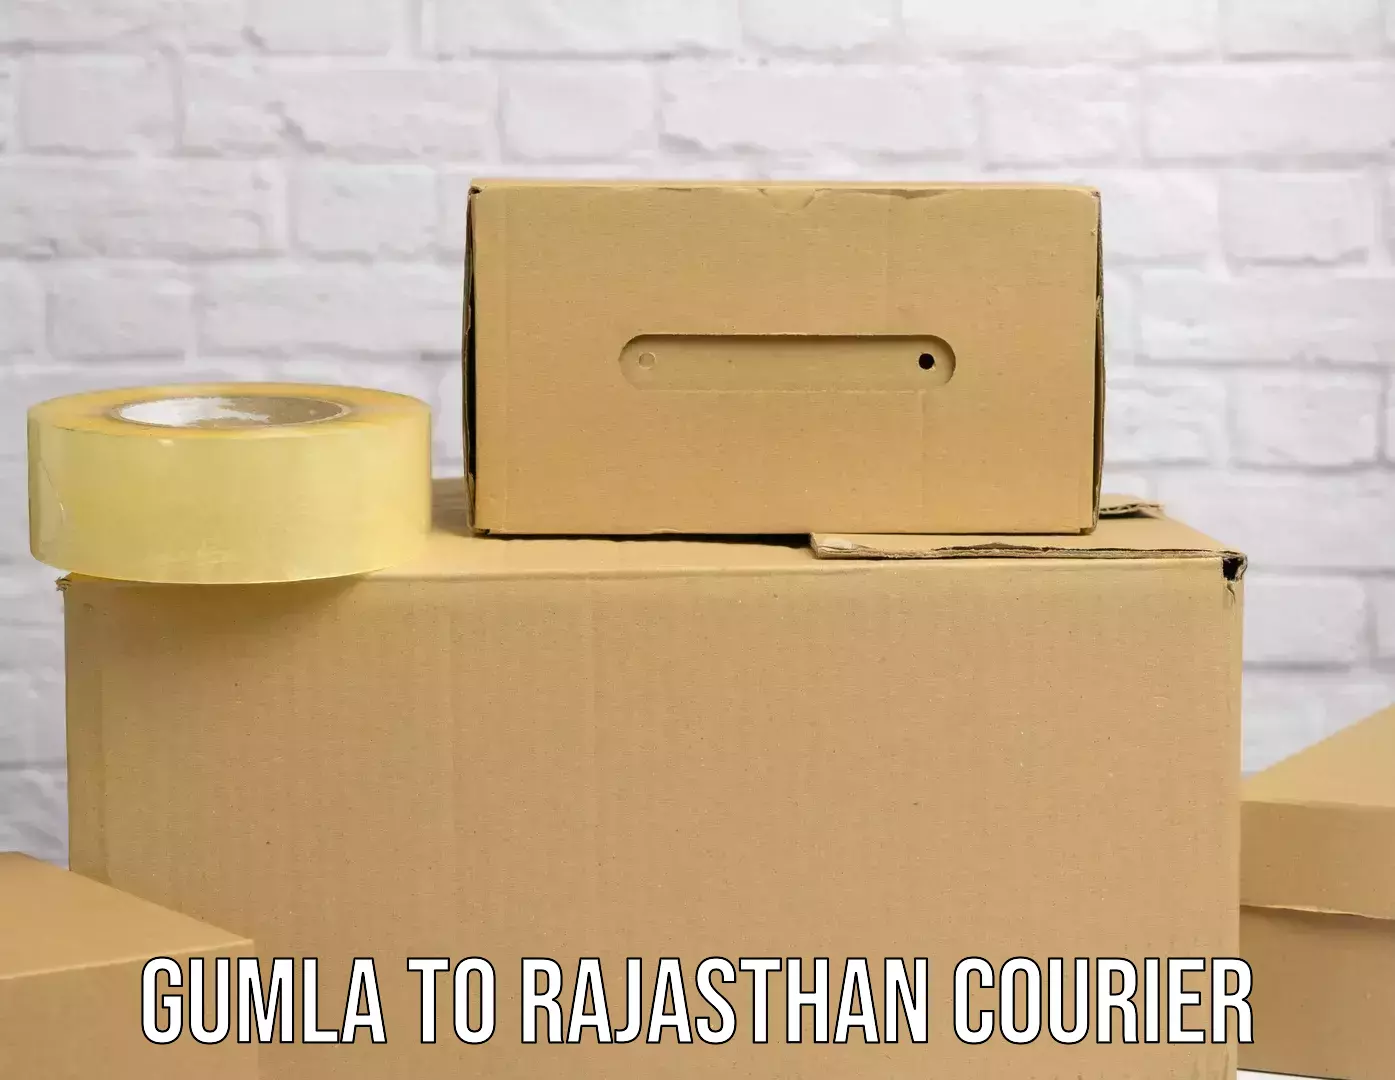 High-speed parcel service Gumla to Rajasthan